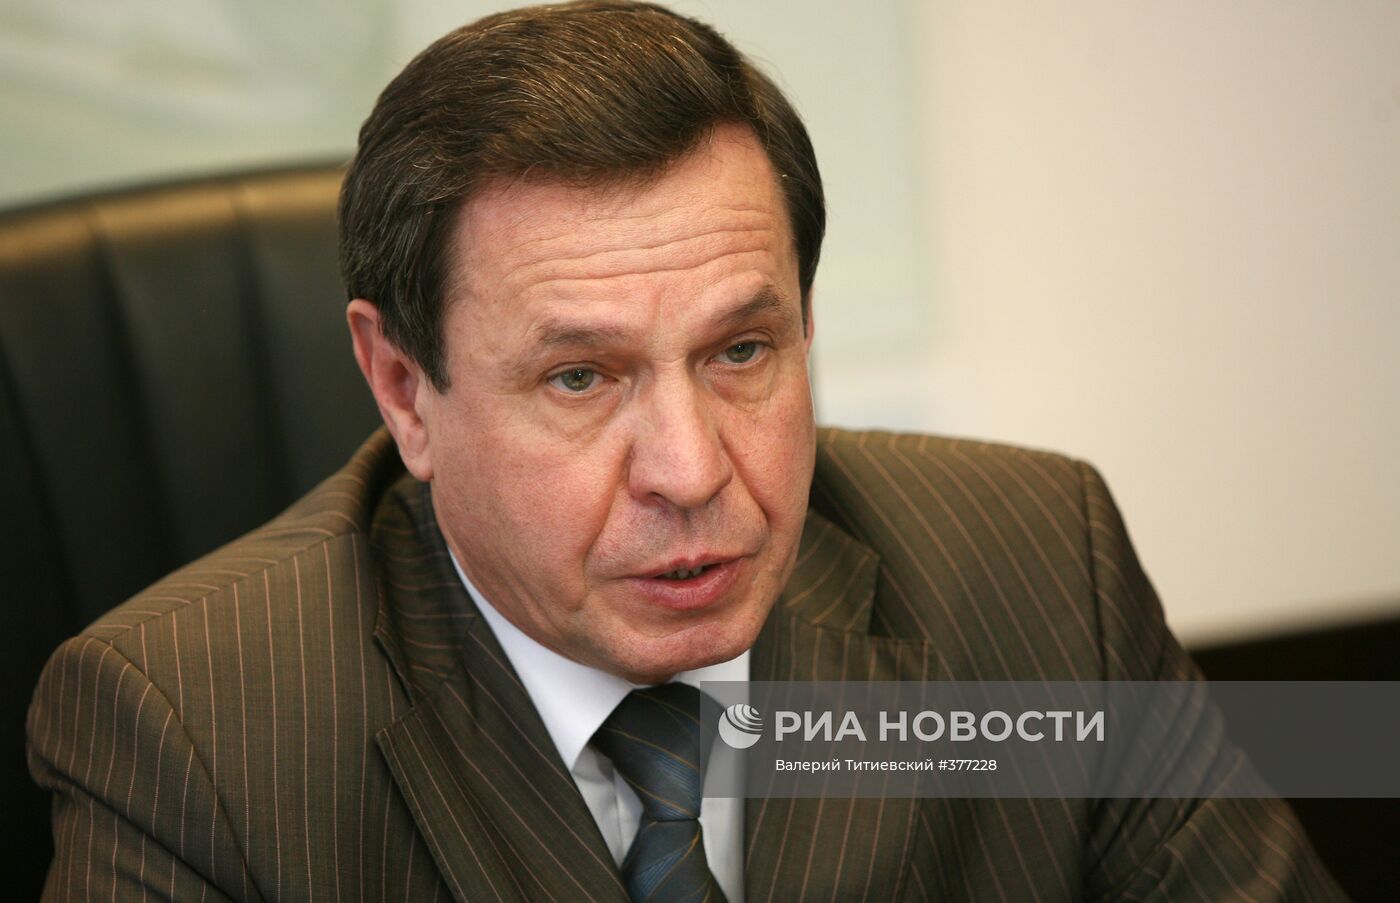 Владимир Городецкий вновь избран мэром Новосибирска